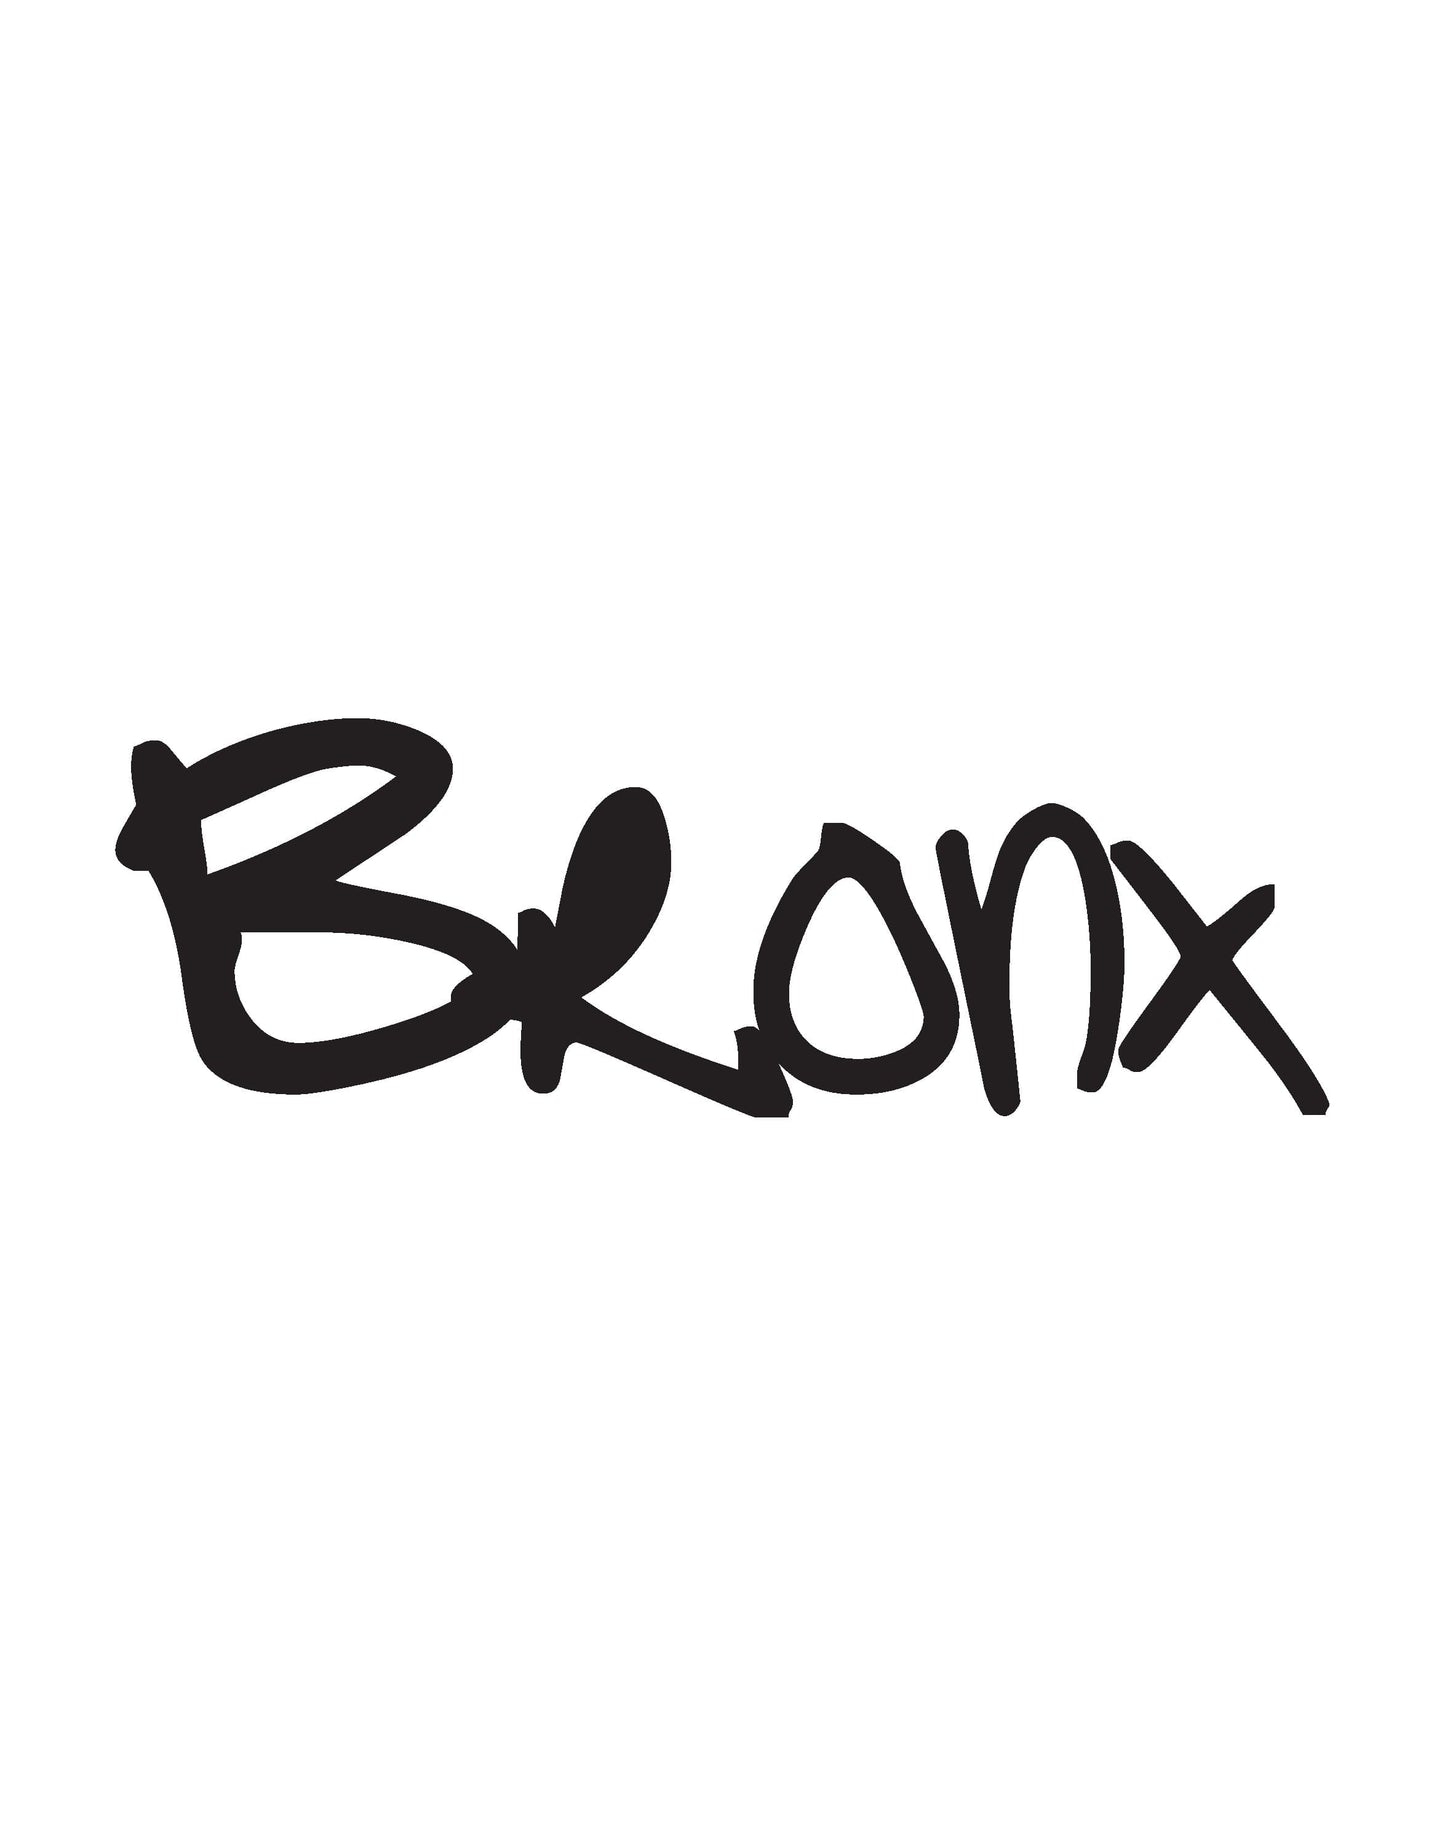 Bronx NYC Graffiti Tag Wall Decal. #T107